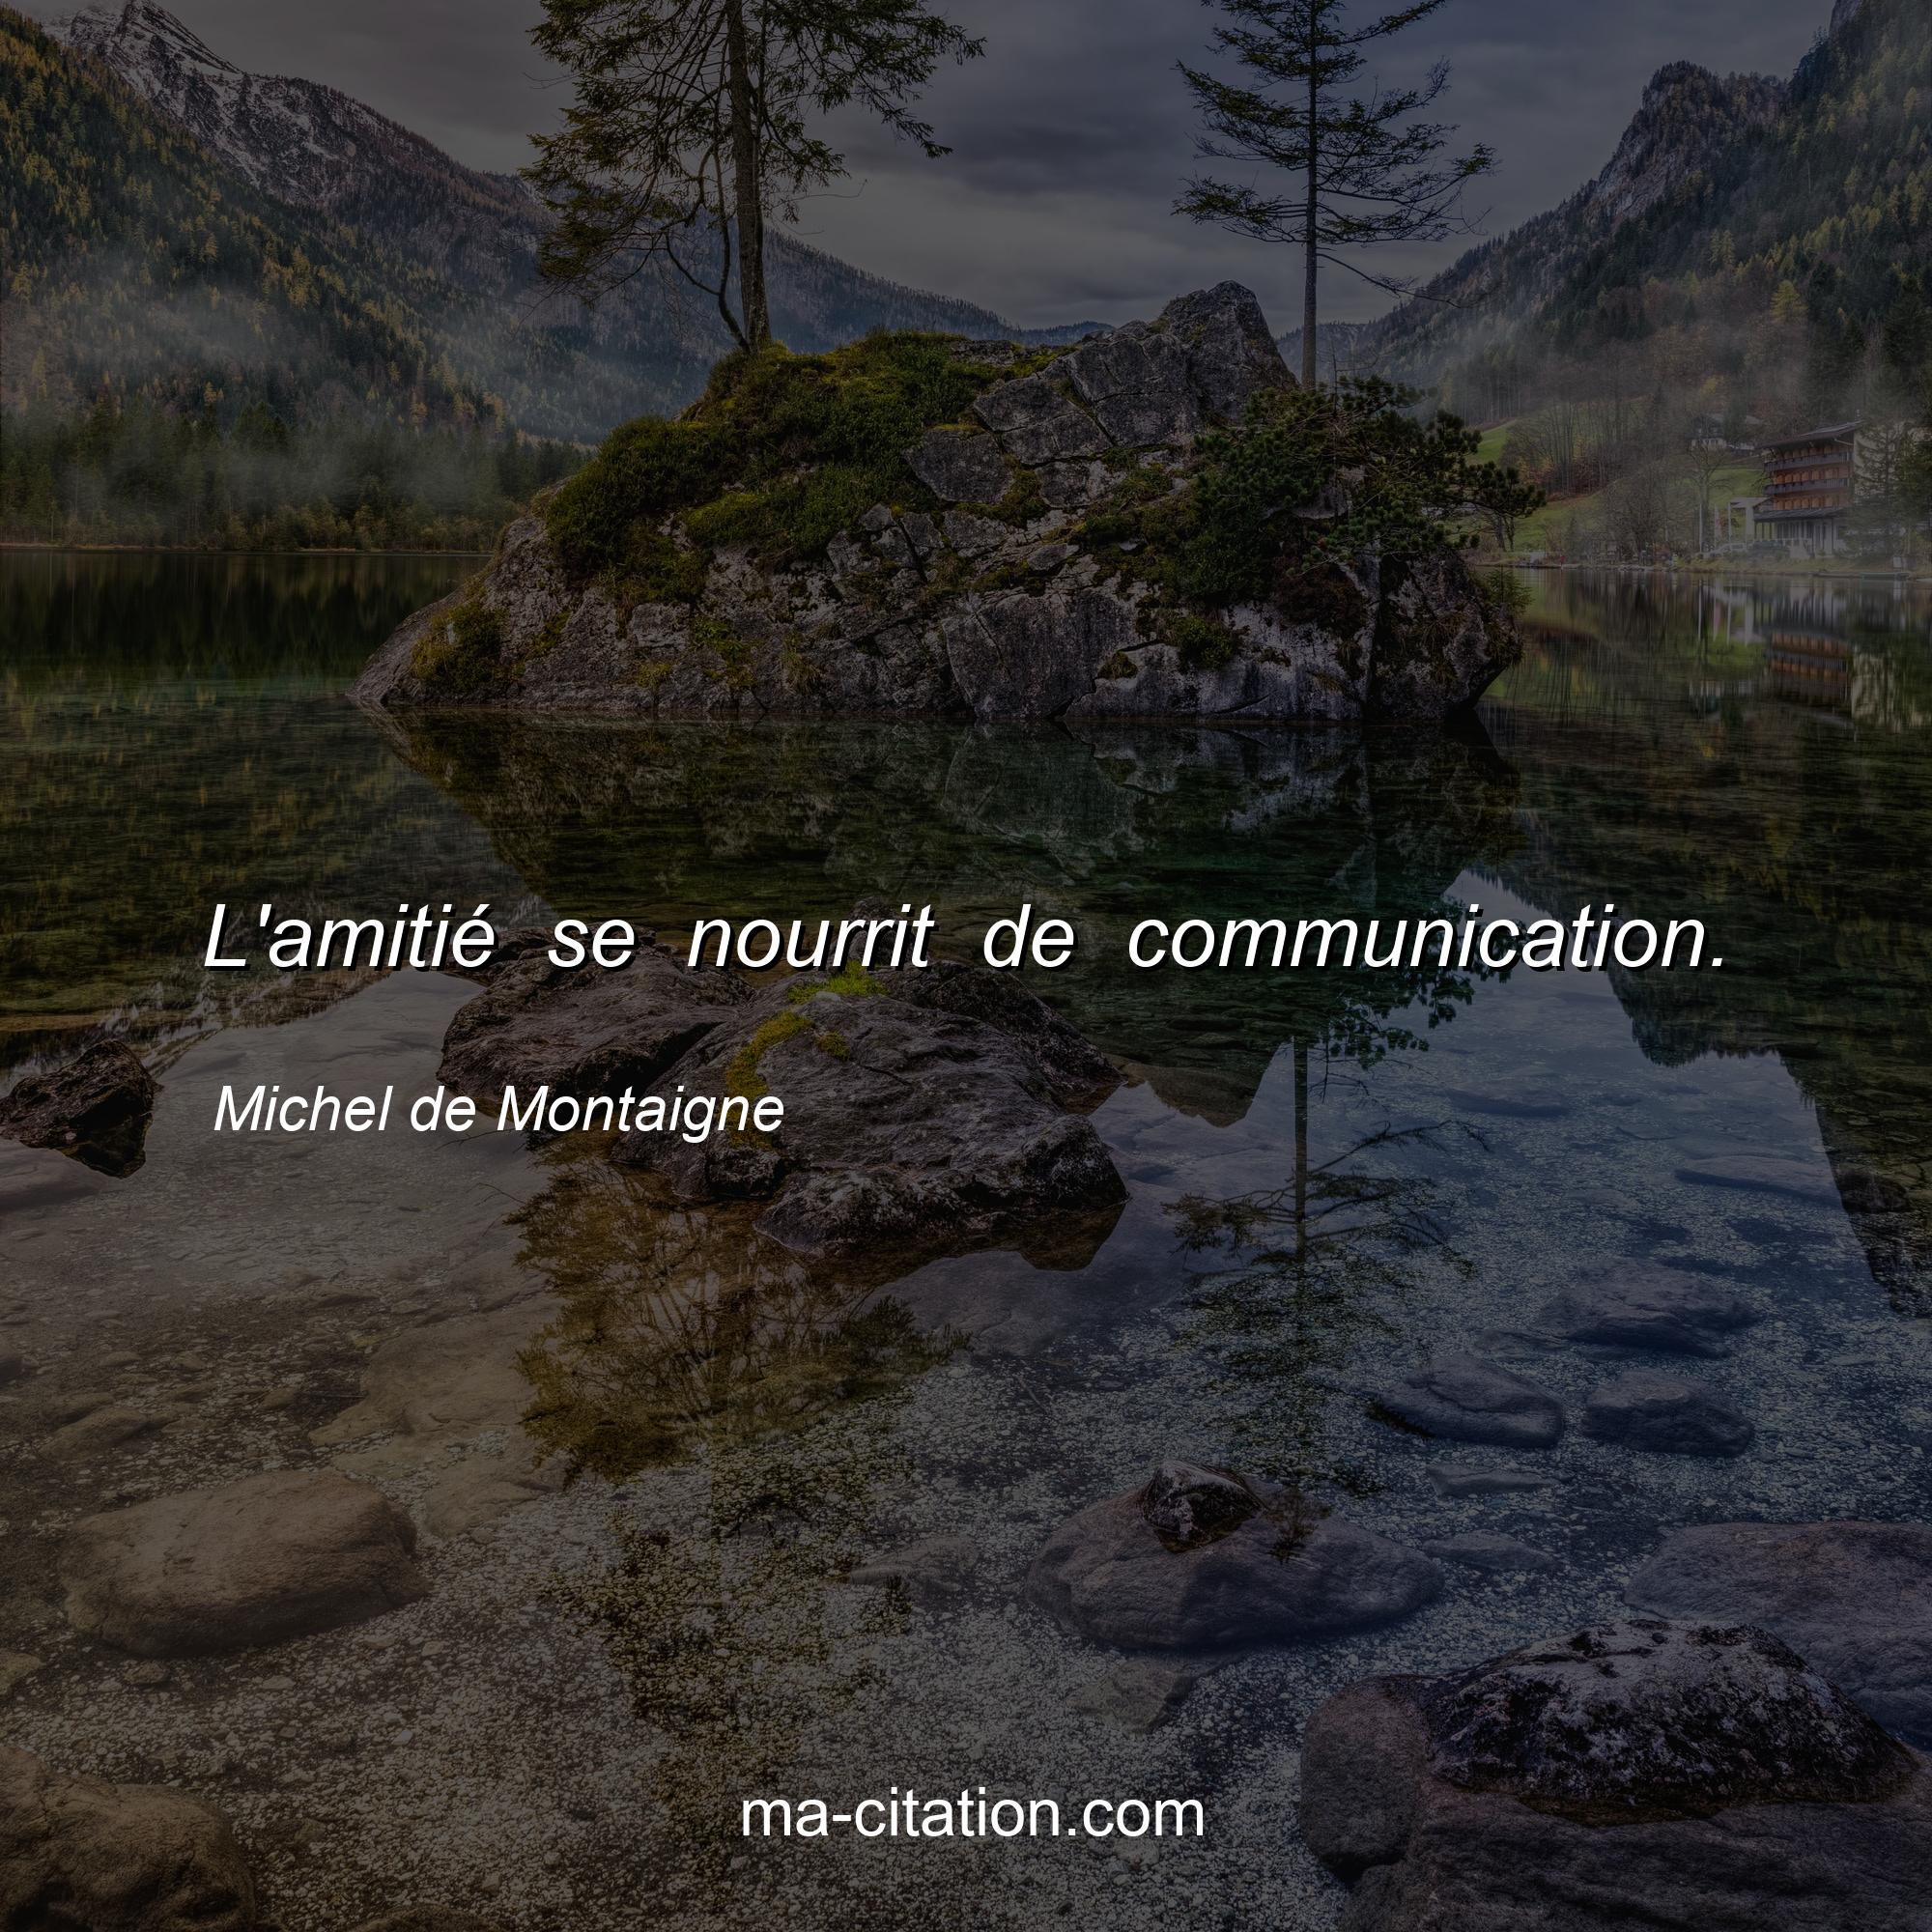 Michel de Montaigne : L'amitié se nourrit de communication.